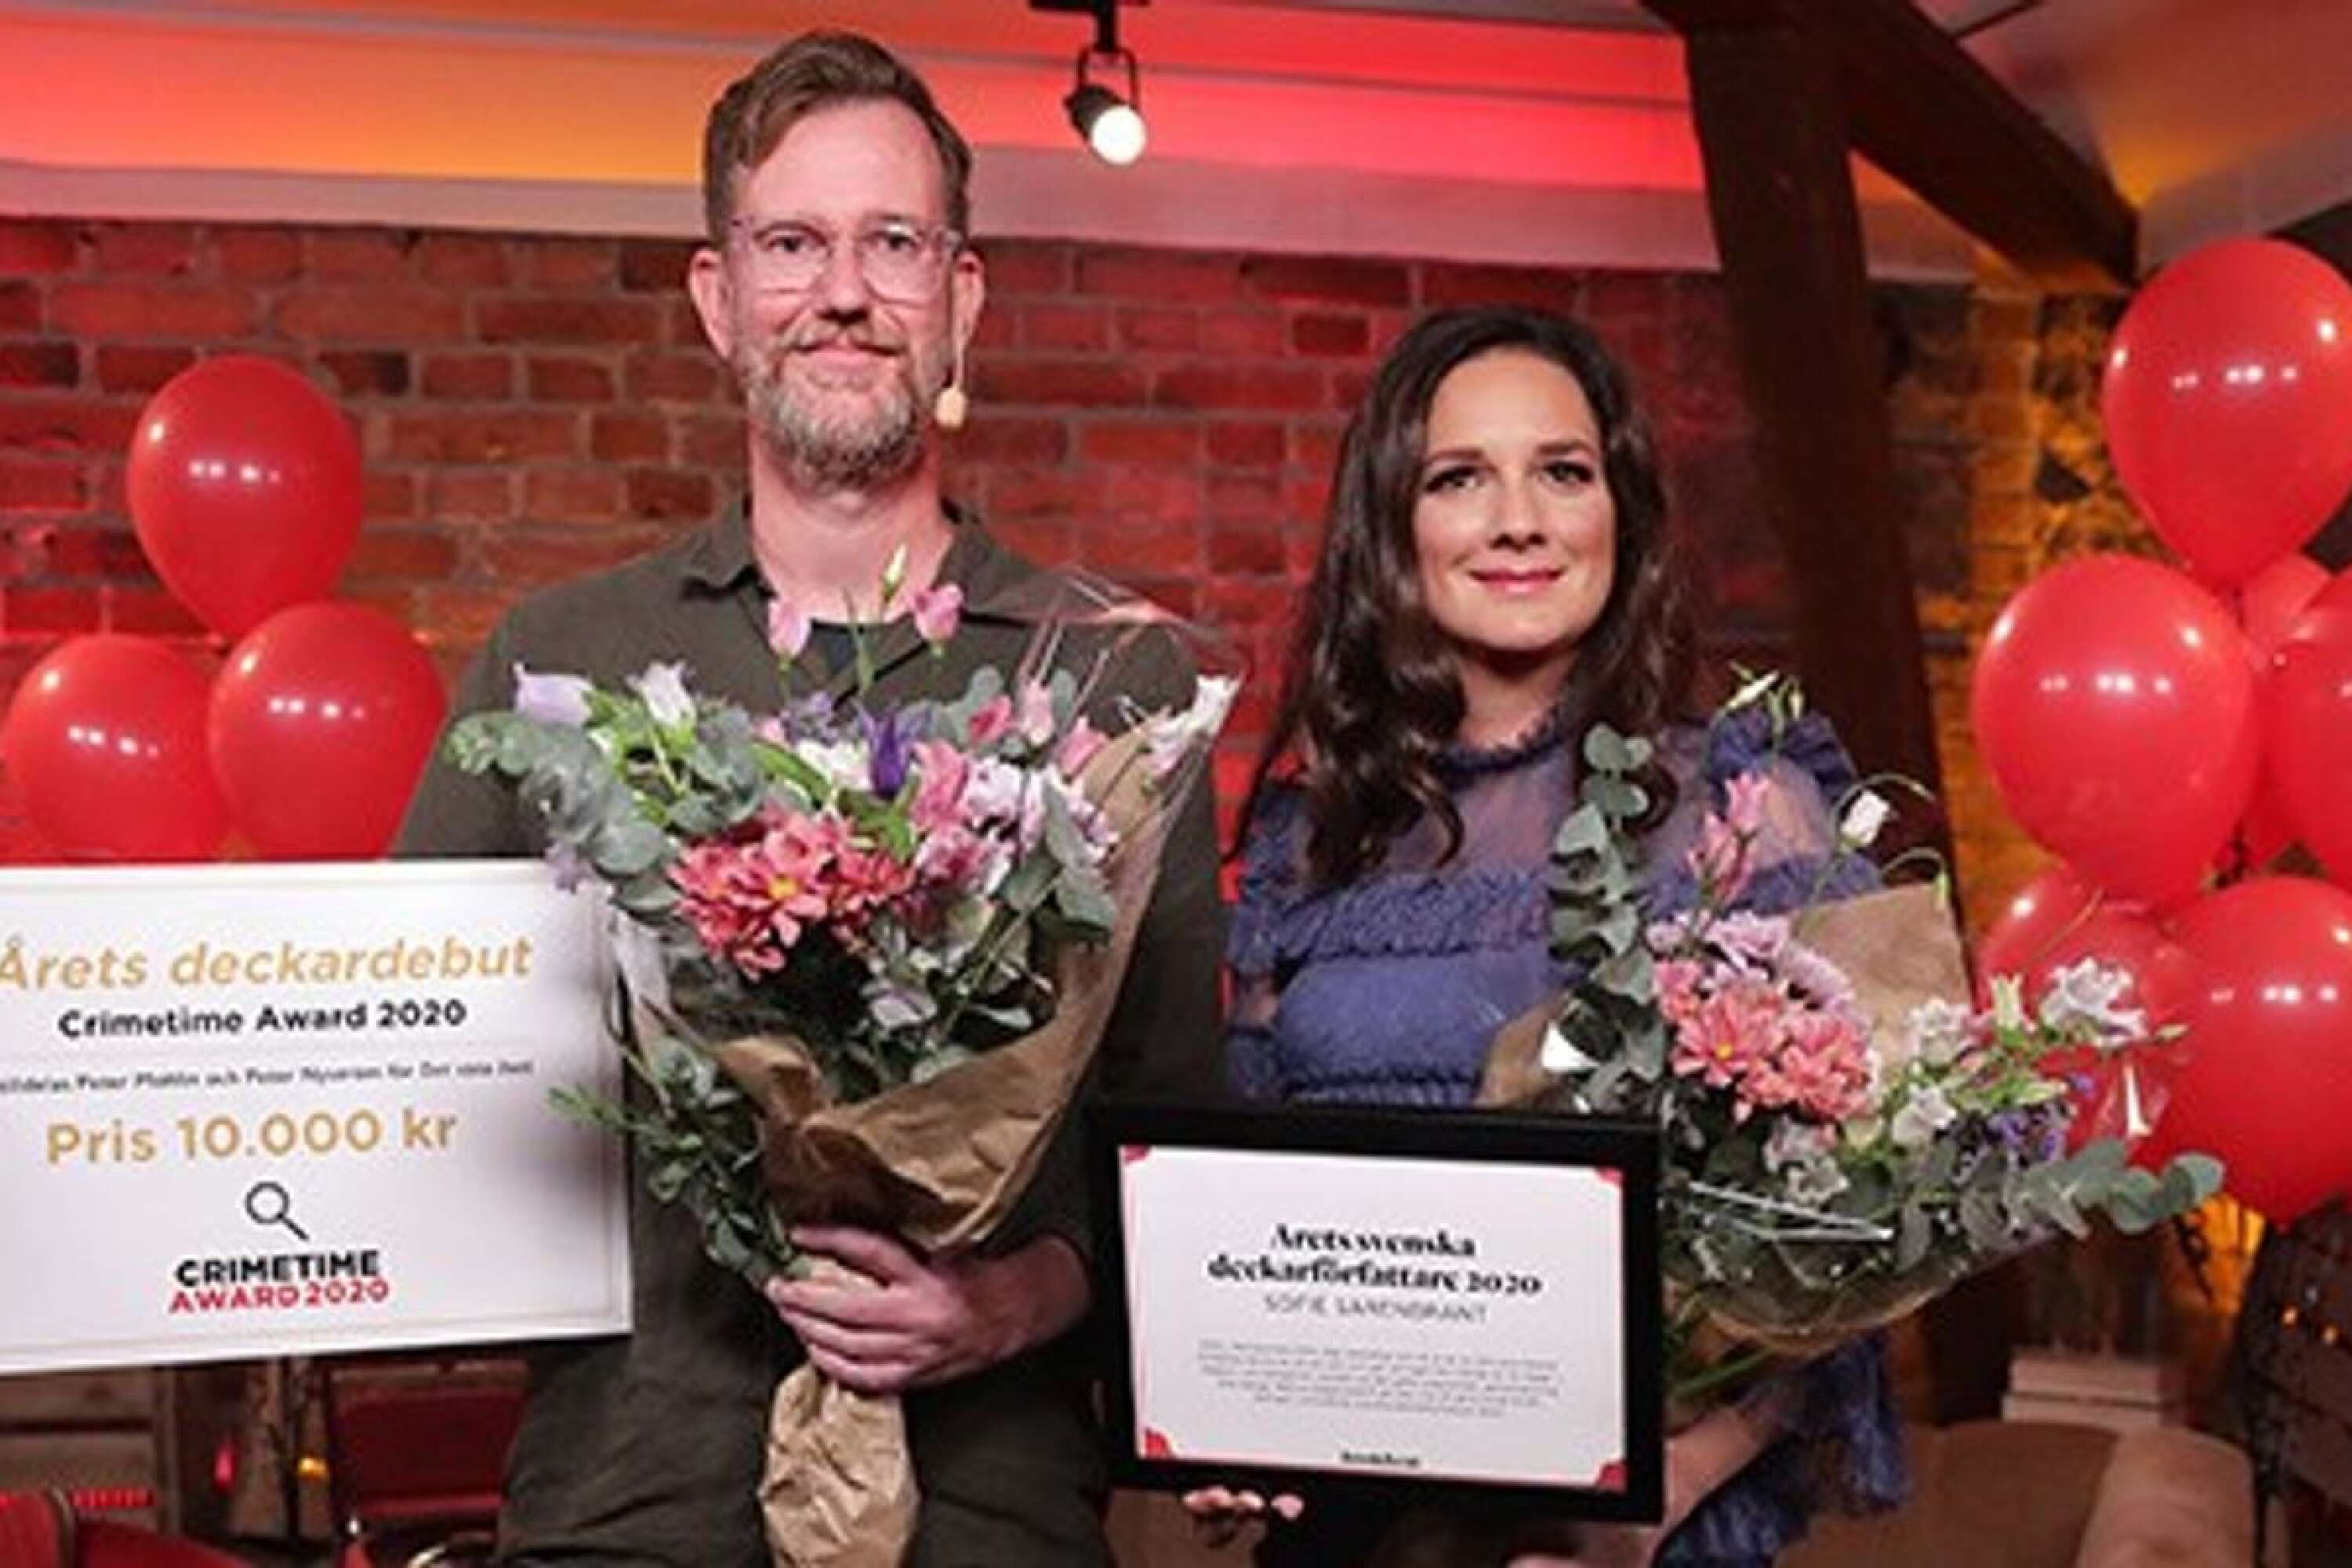 Förra årets pristagare av Crimetime Award 2020: Peter Mohlin (Årets deckardebut) och Sofie Sarenbrant (Årets svenska debutförfattare).